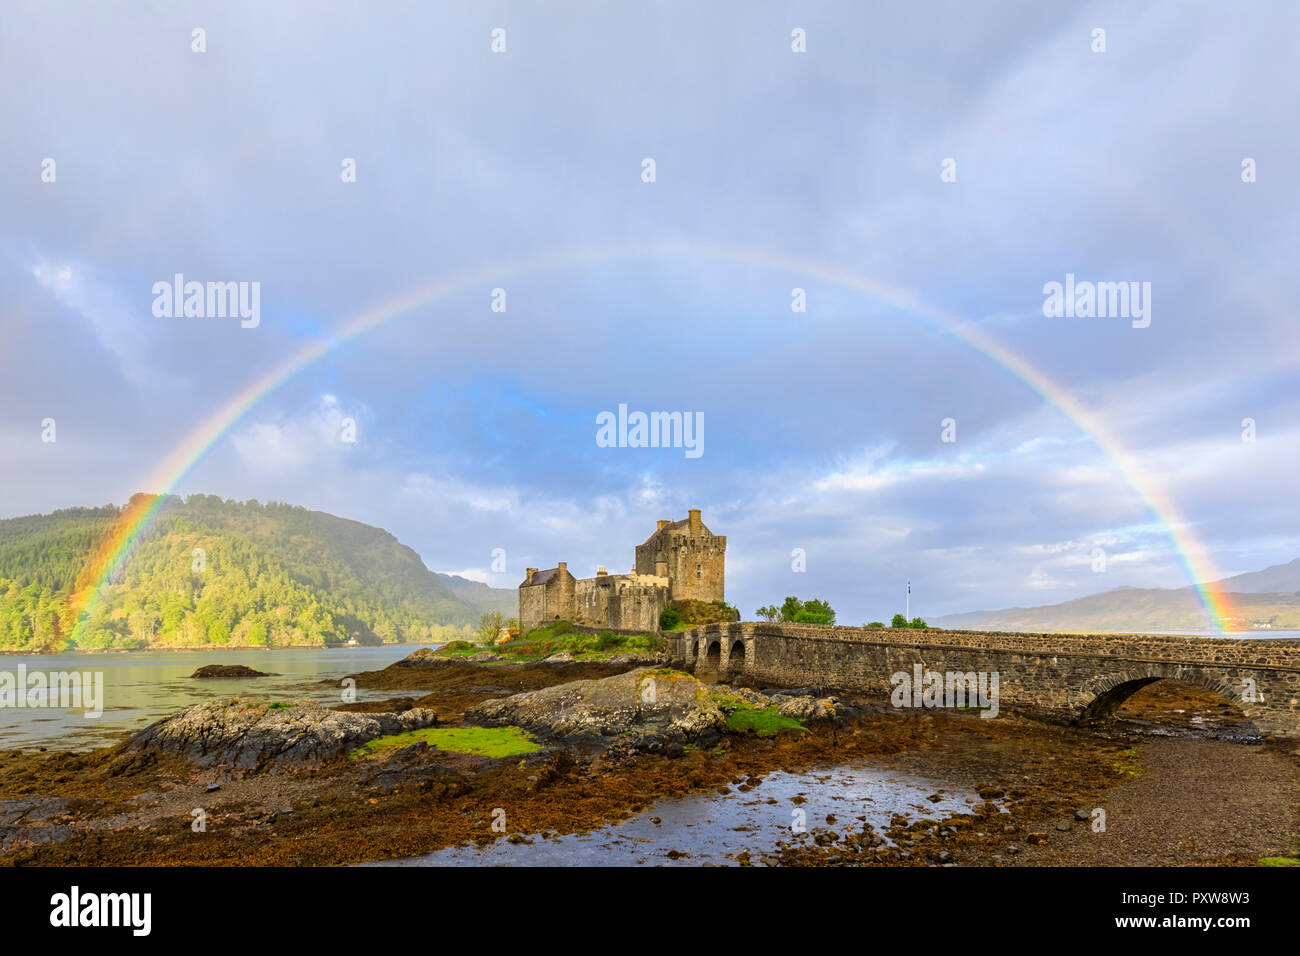 UK, Scotland, Dornie, Loch Duich, Eilean Donan Castle with rainbow Stock Photo